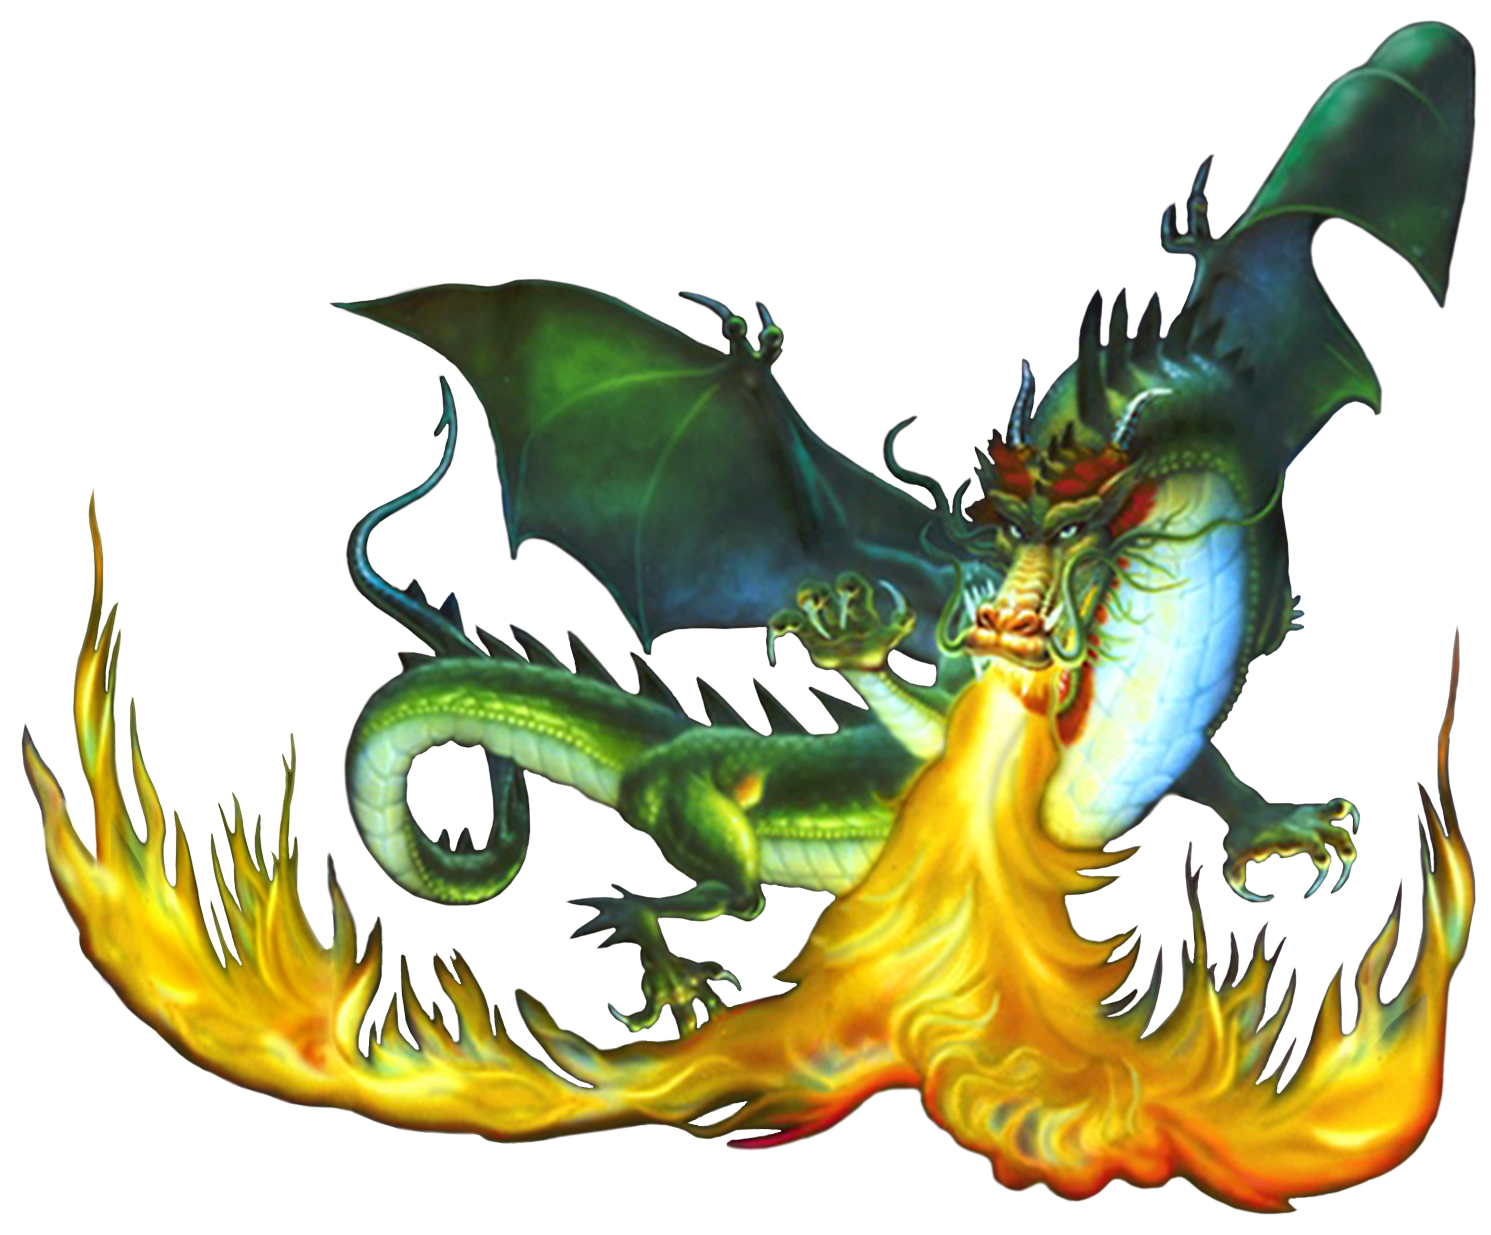 TBA*: Fire Breathing Dragon